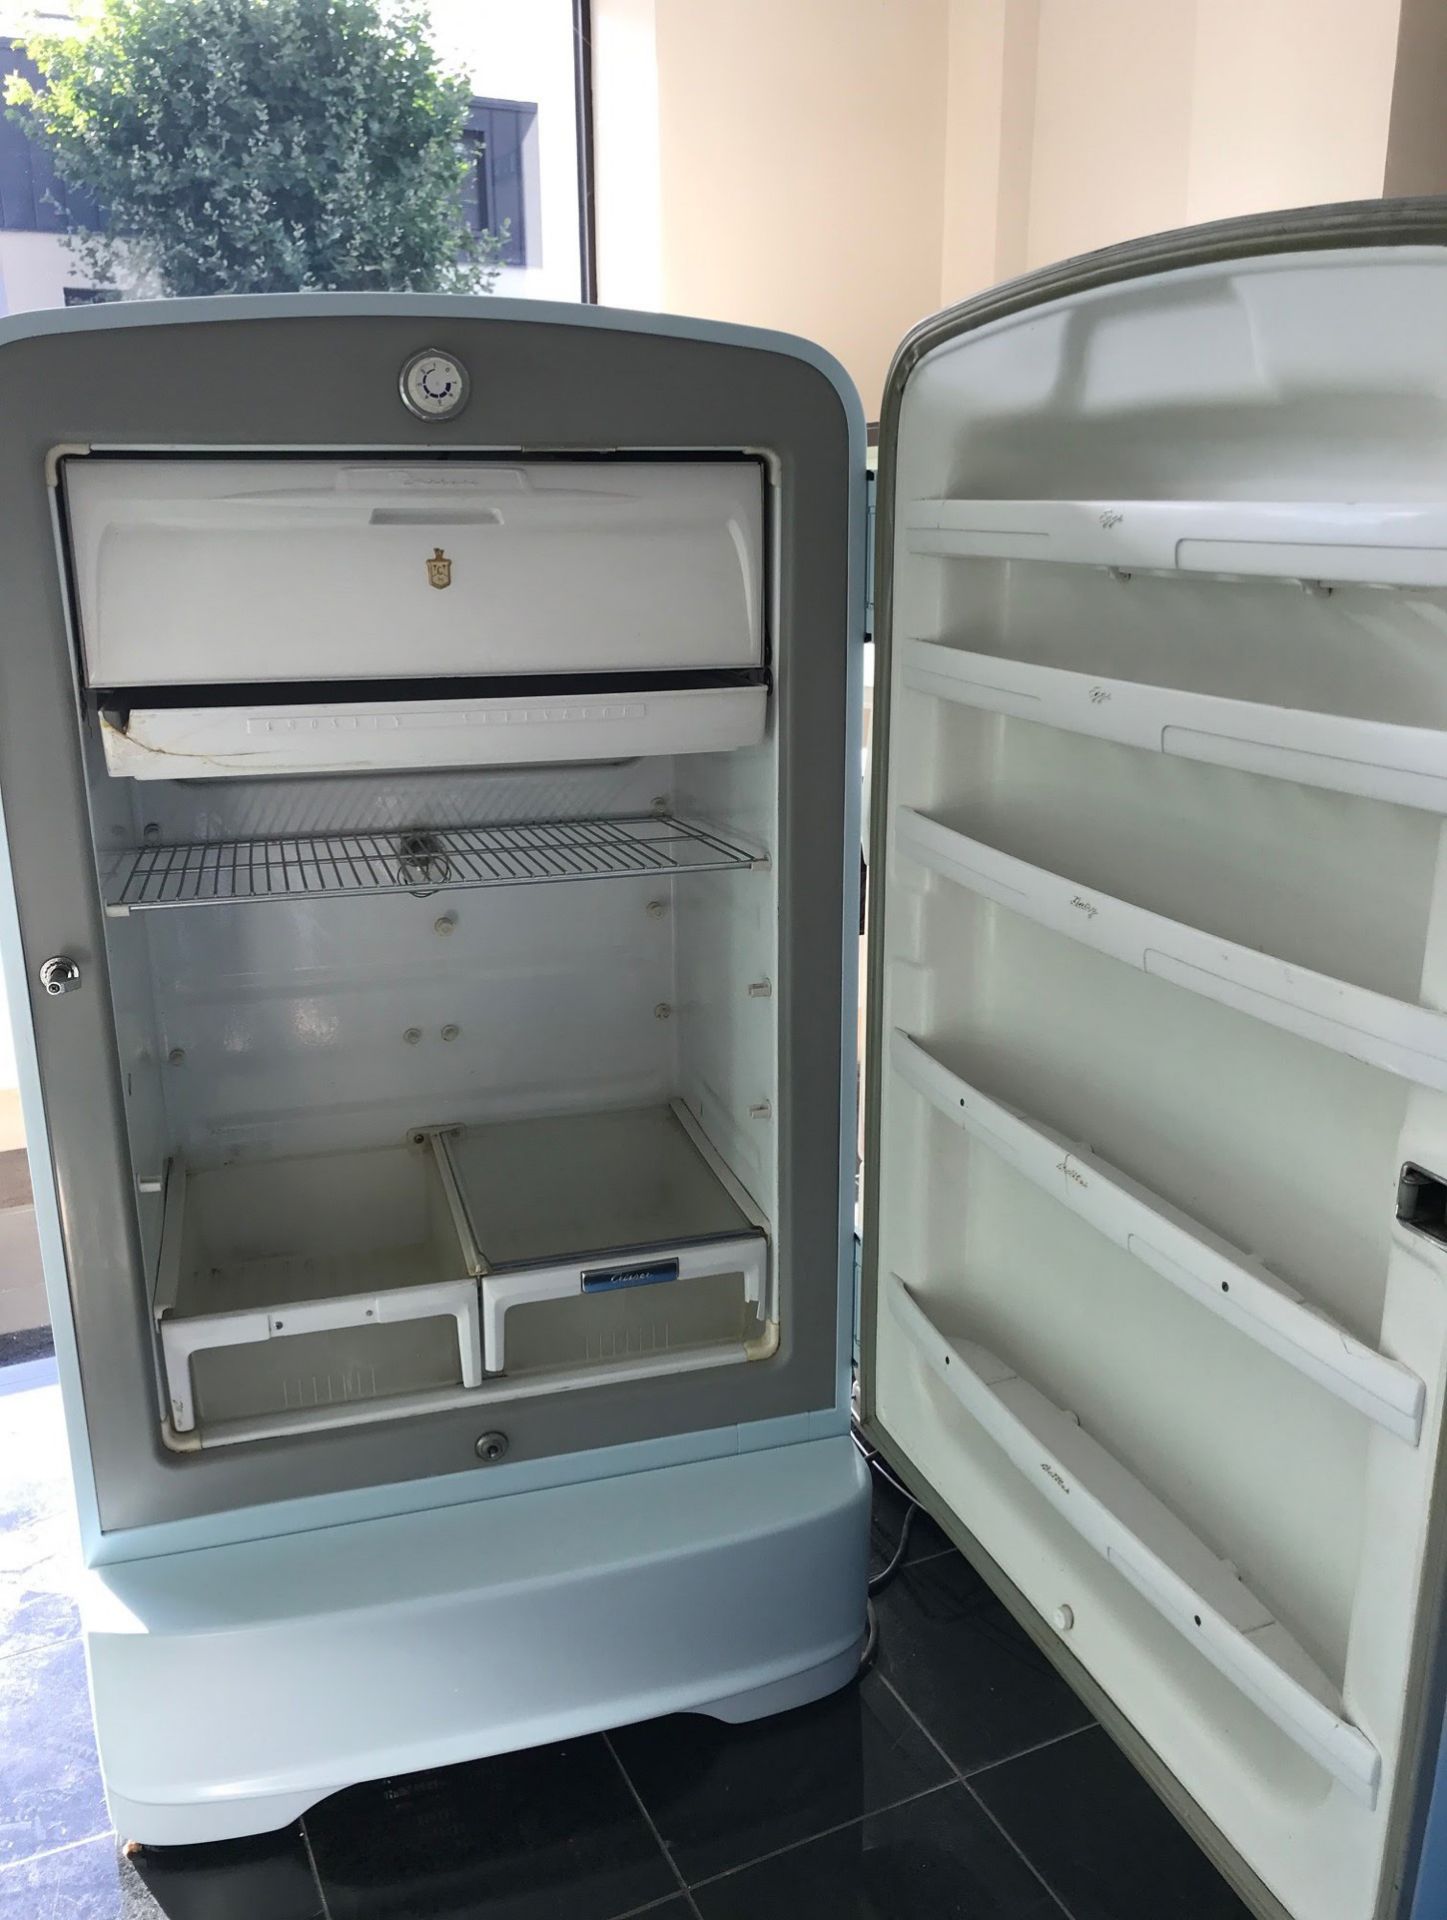 1956 Crosley/Shelvador Refrigerator in Matt Baby Blue Color  - Image 2 of 2